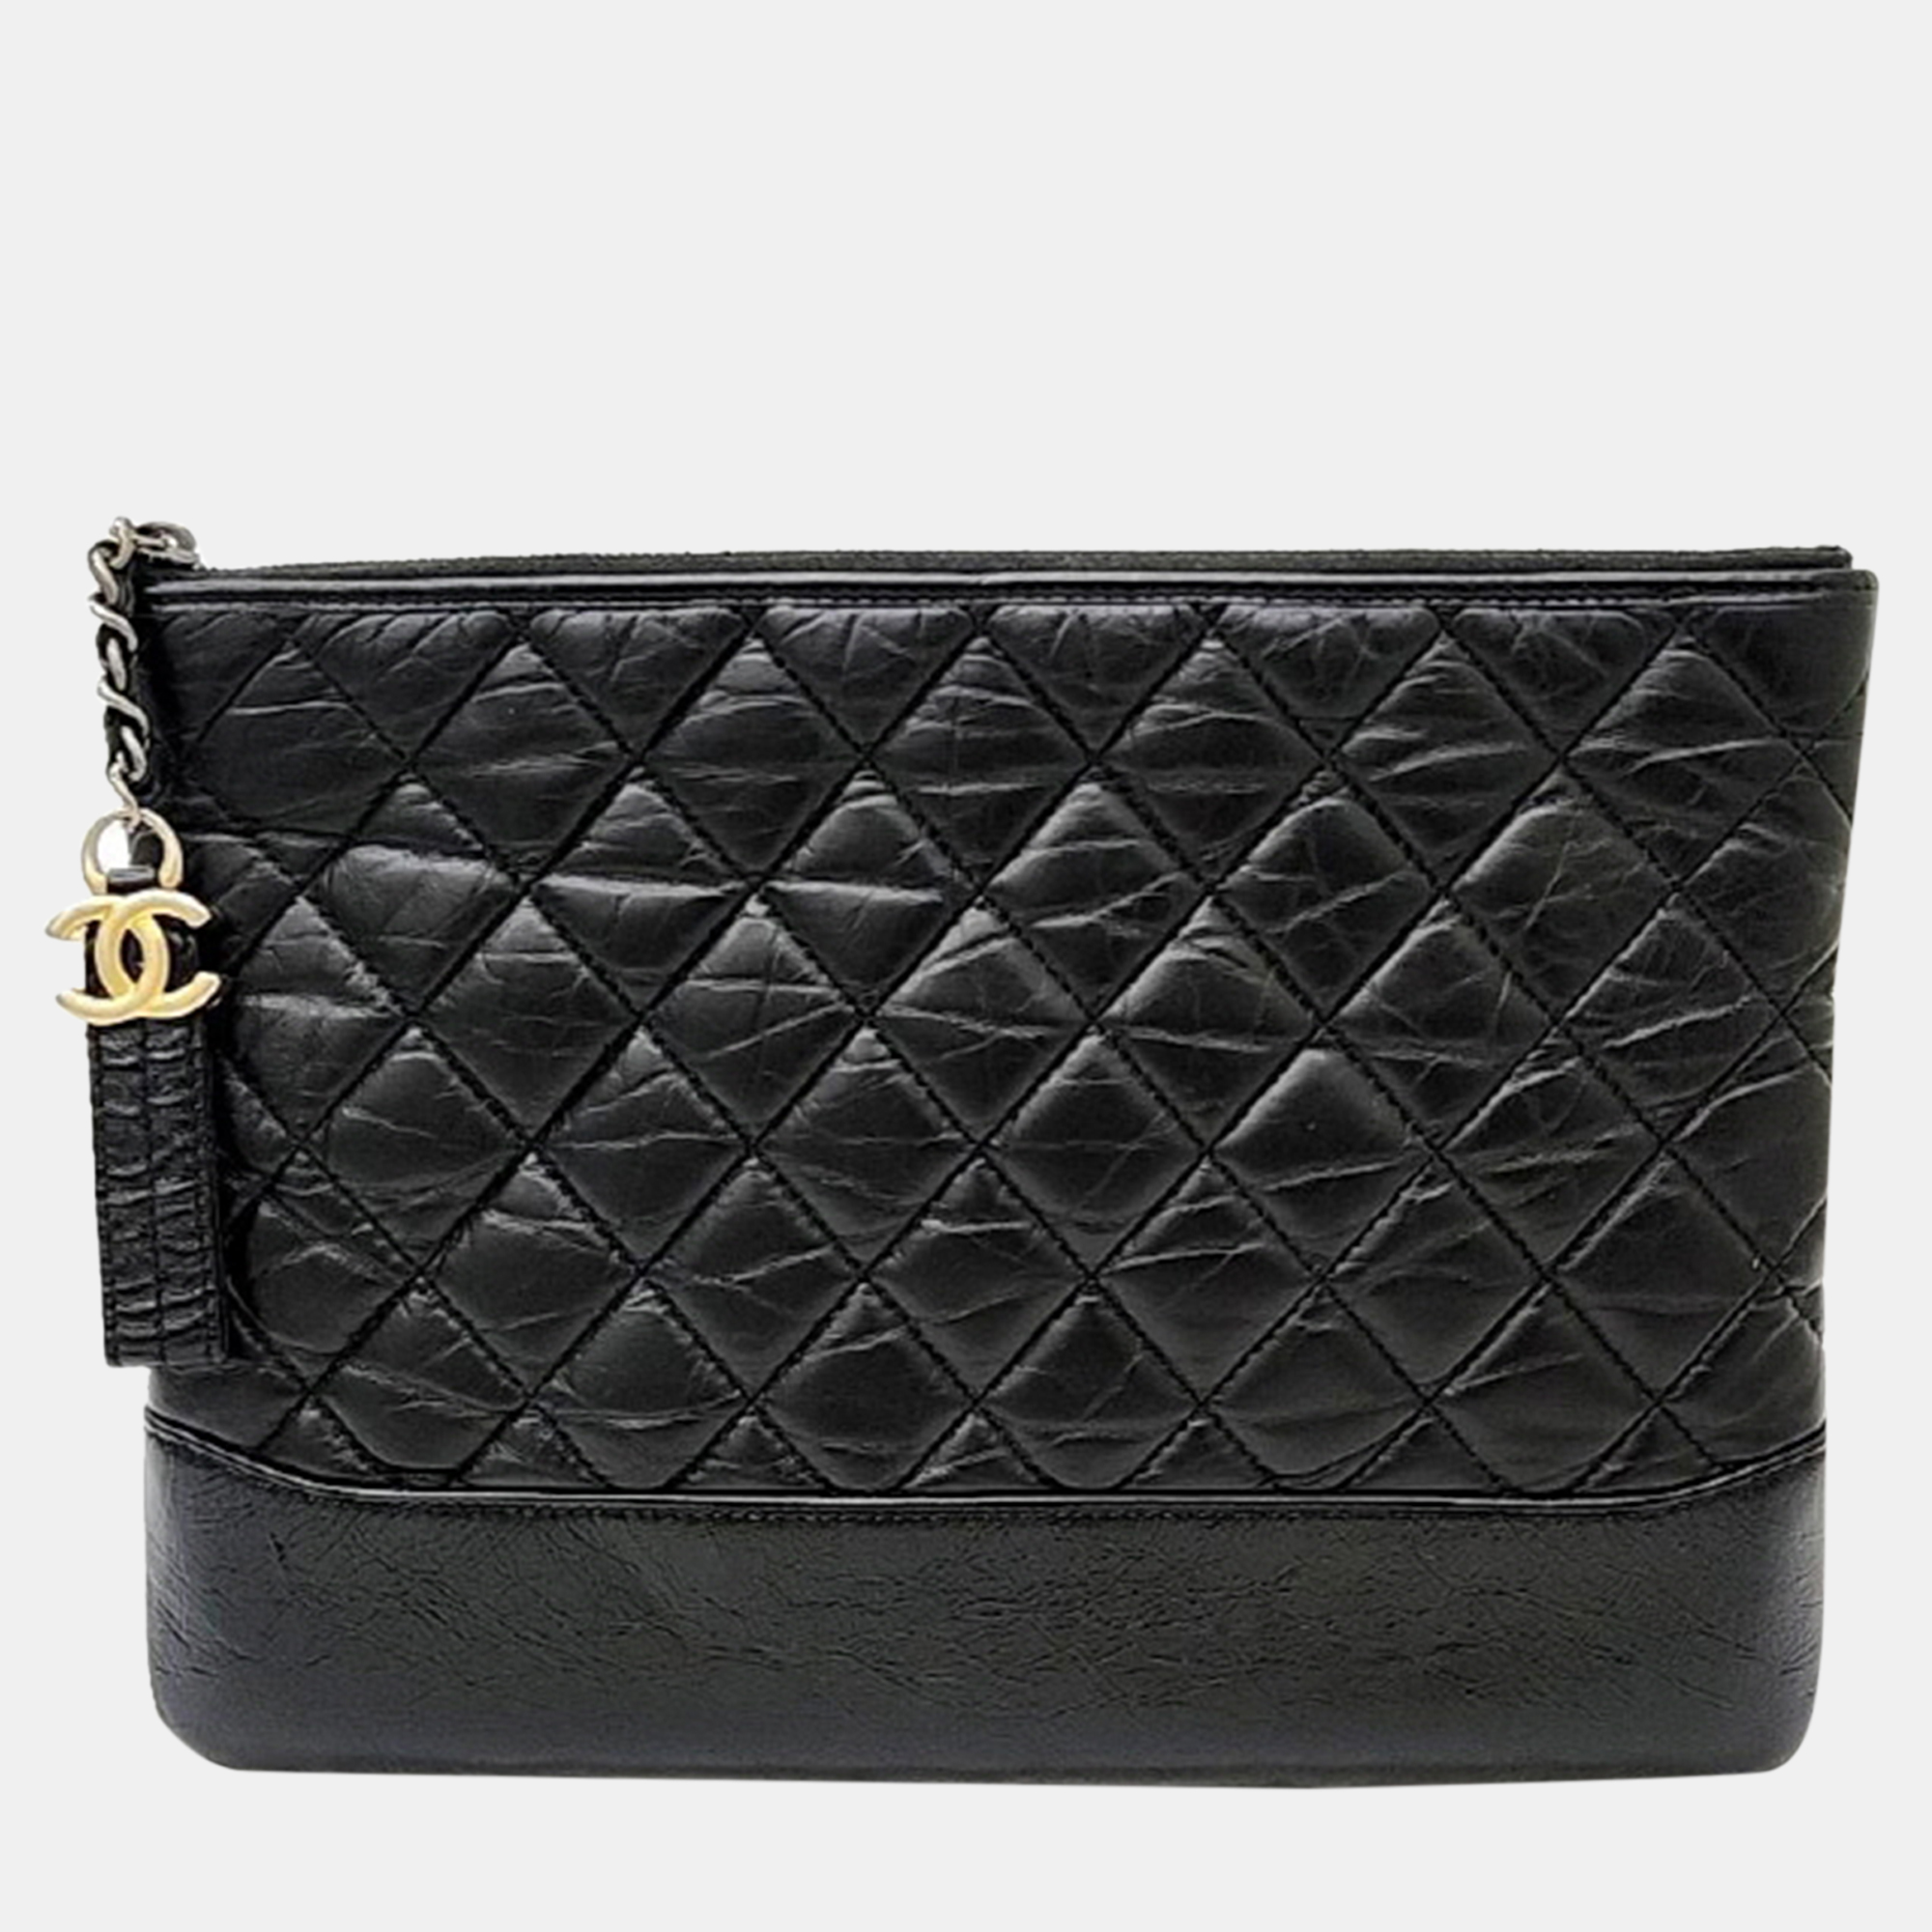 Chanel black leather gabrielle medium clutch bag